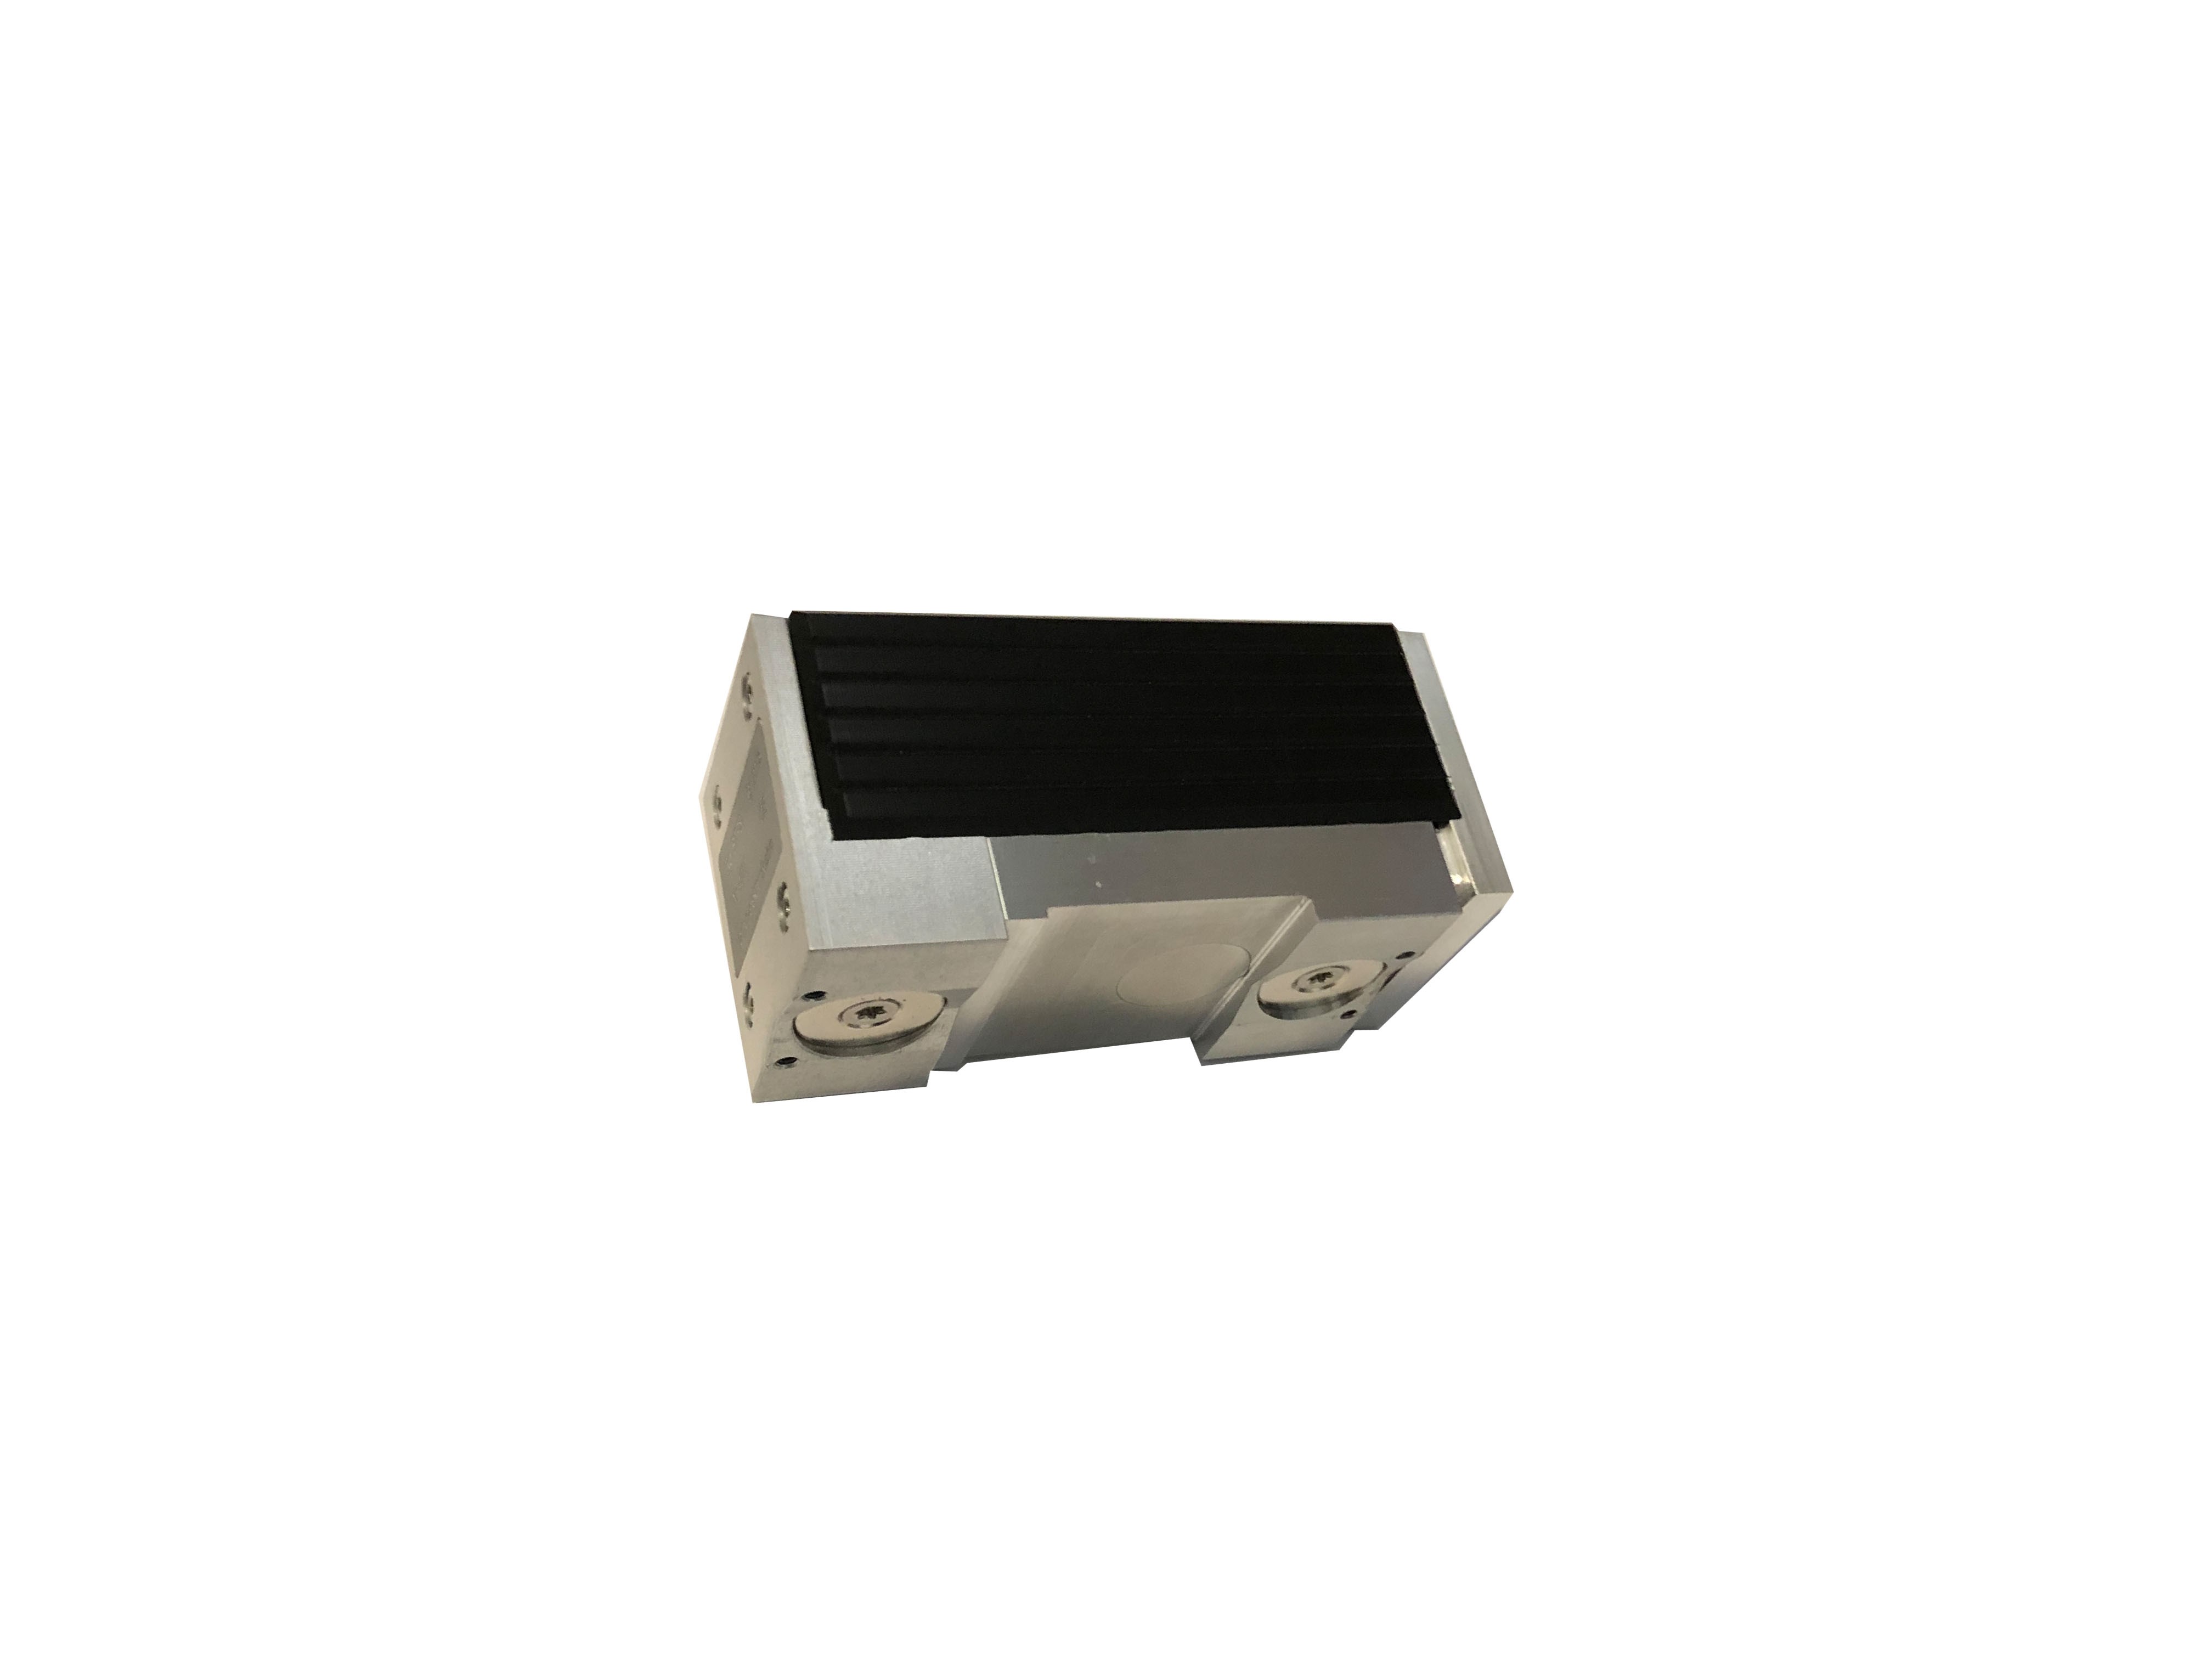 SDM 4000 RS-1 Sistema de Medição de Barras de Anéis Inteligentes sem fio